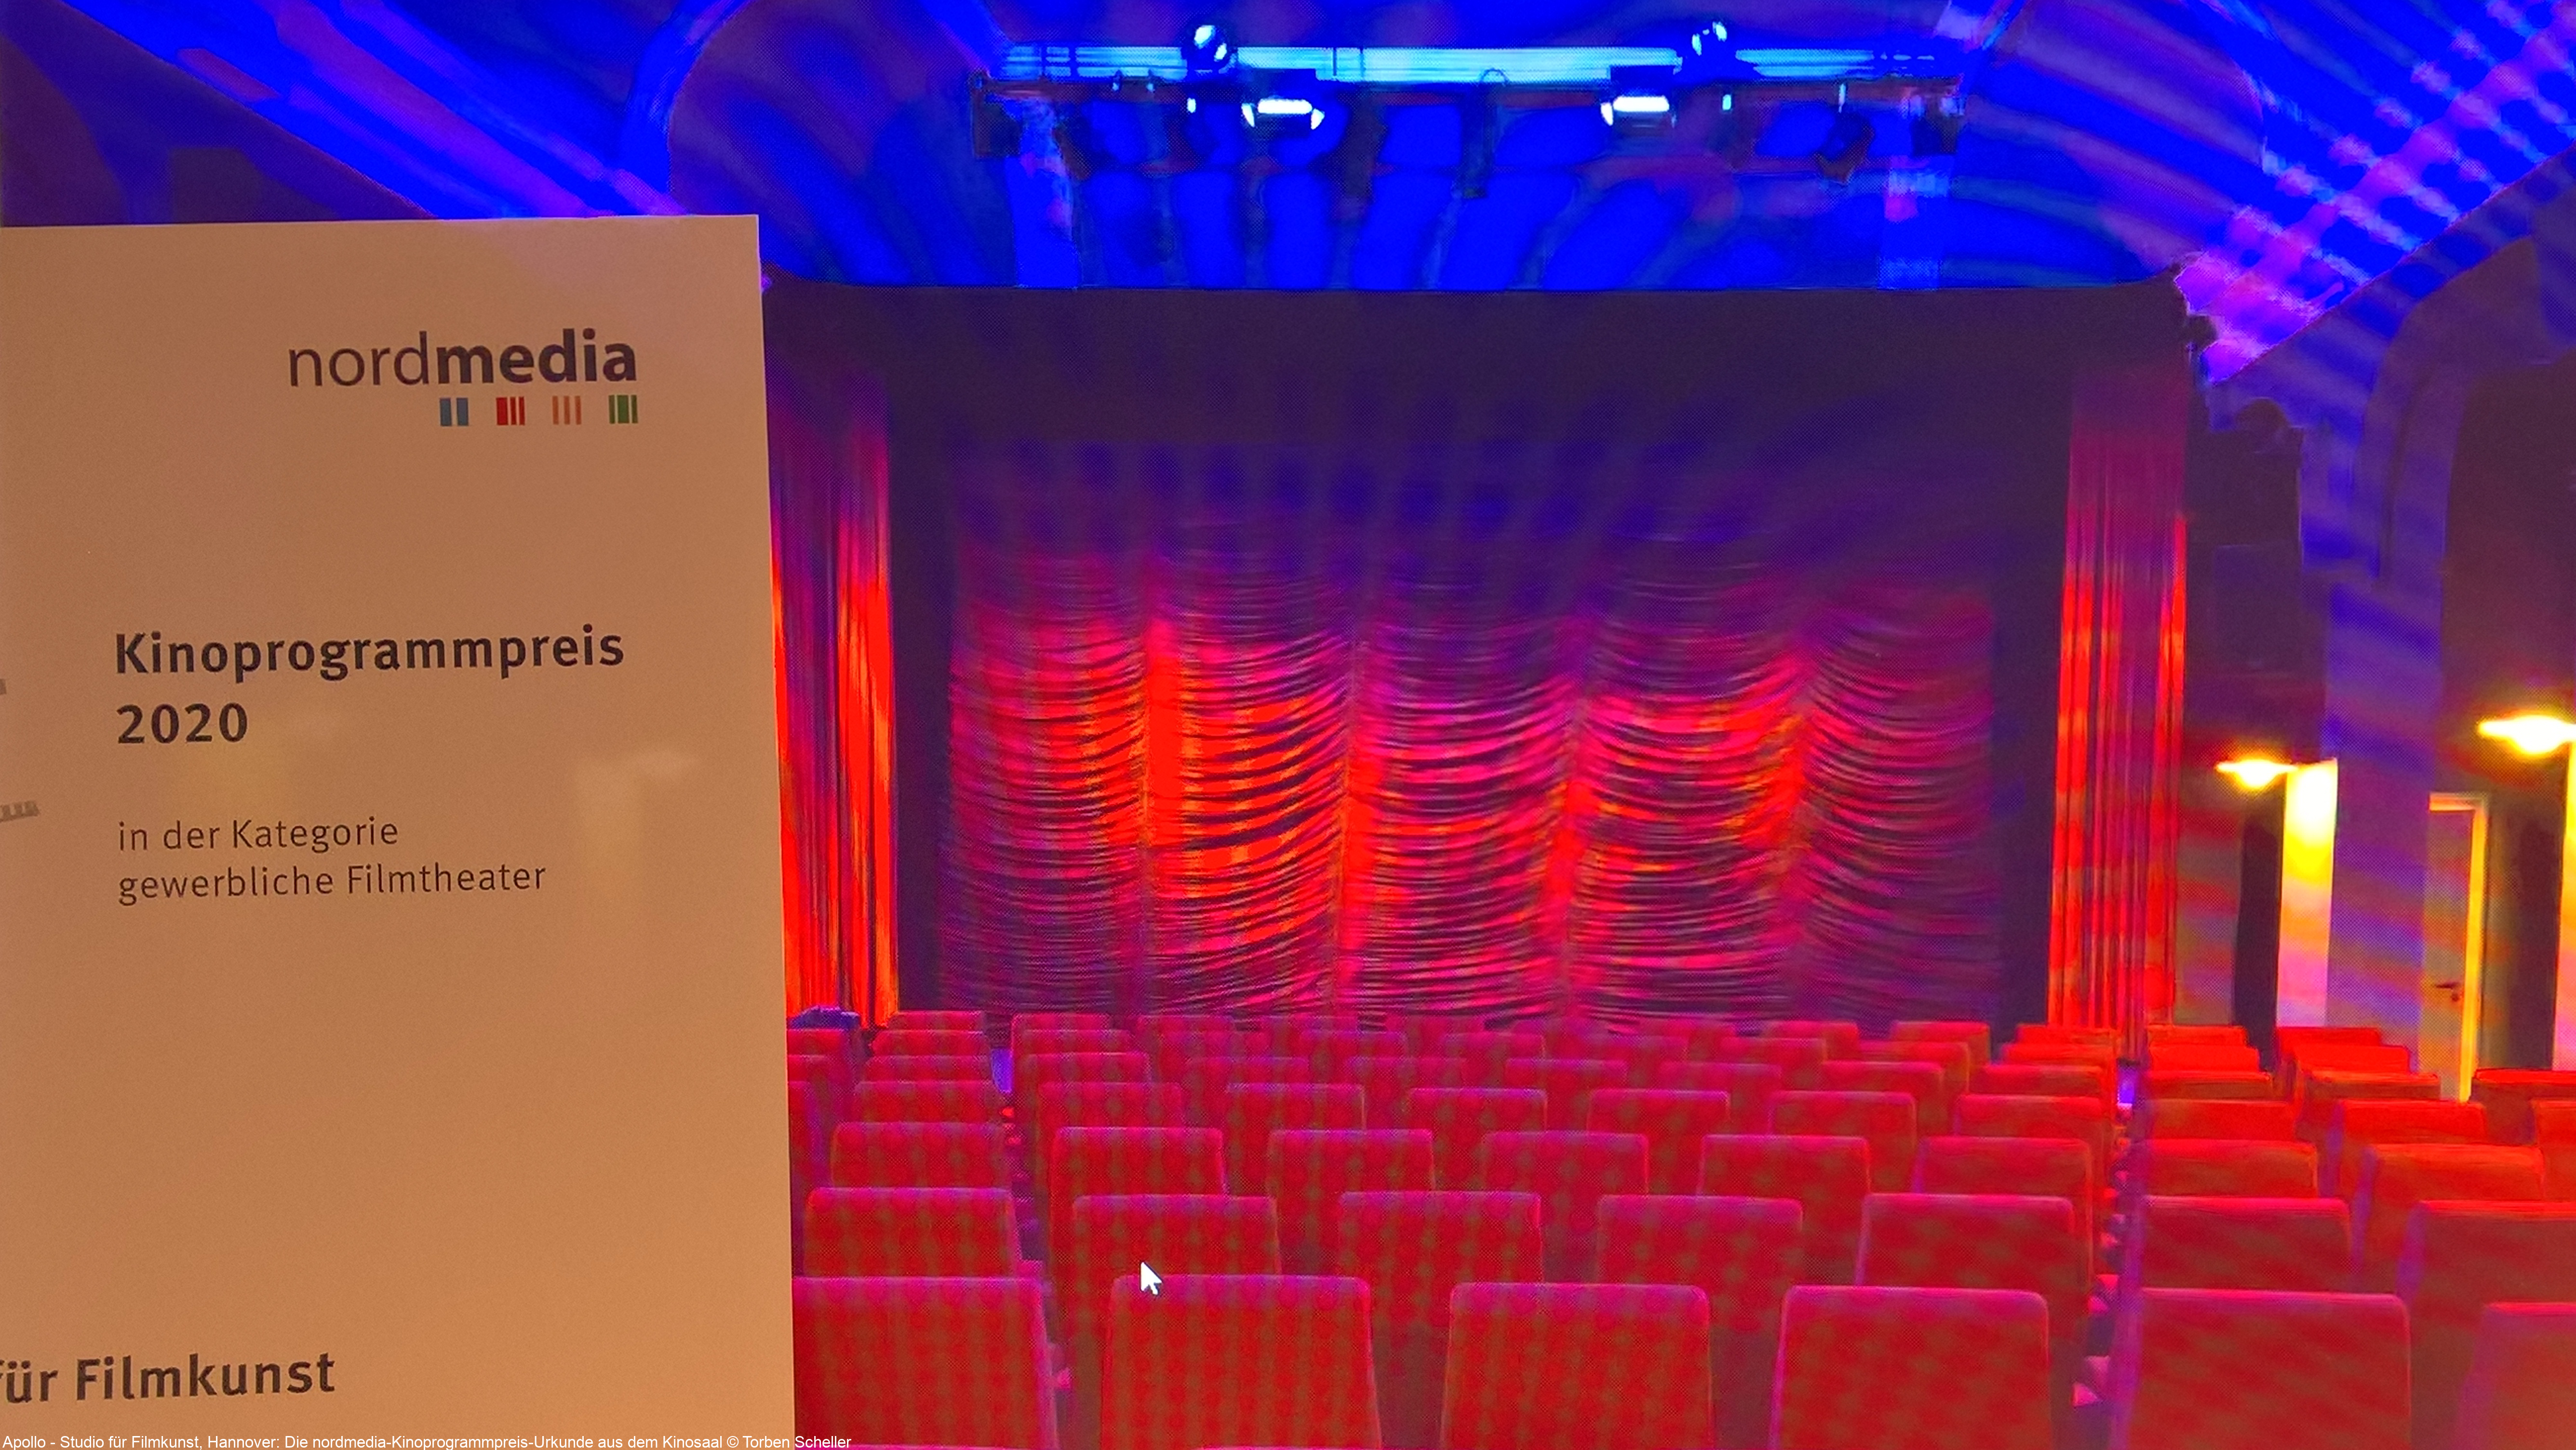 Apollo - Studio für Filmkunst, Hannover: Die nordmedia-Kinoprogrammpreis-Urkunde aus dem Kinosaal © Torben Scheller